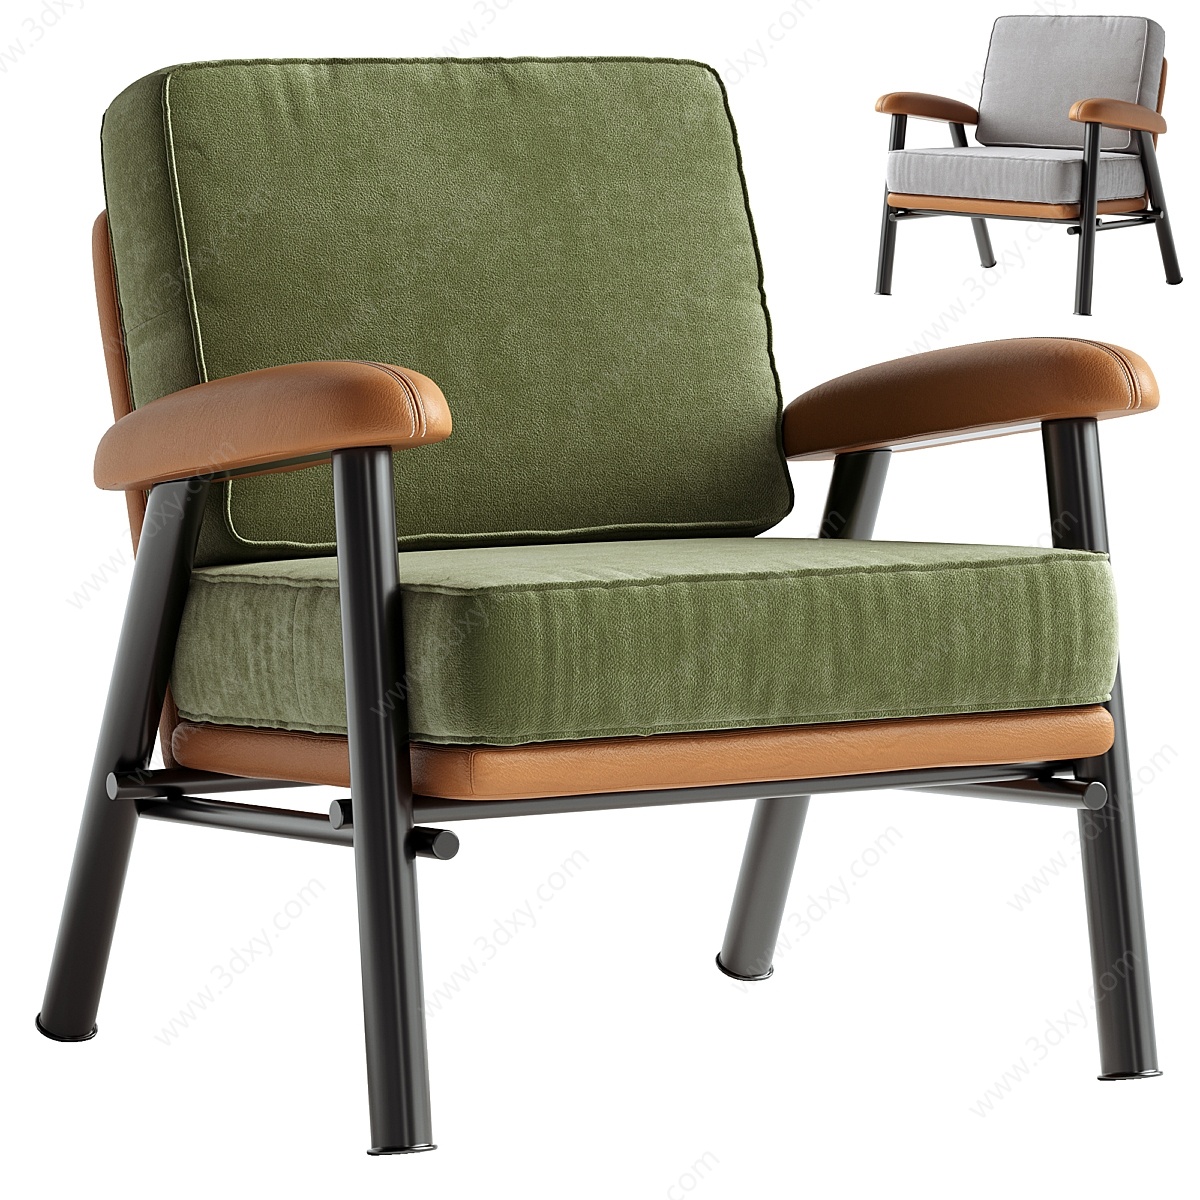 绿色沙发椅3D模型